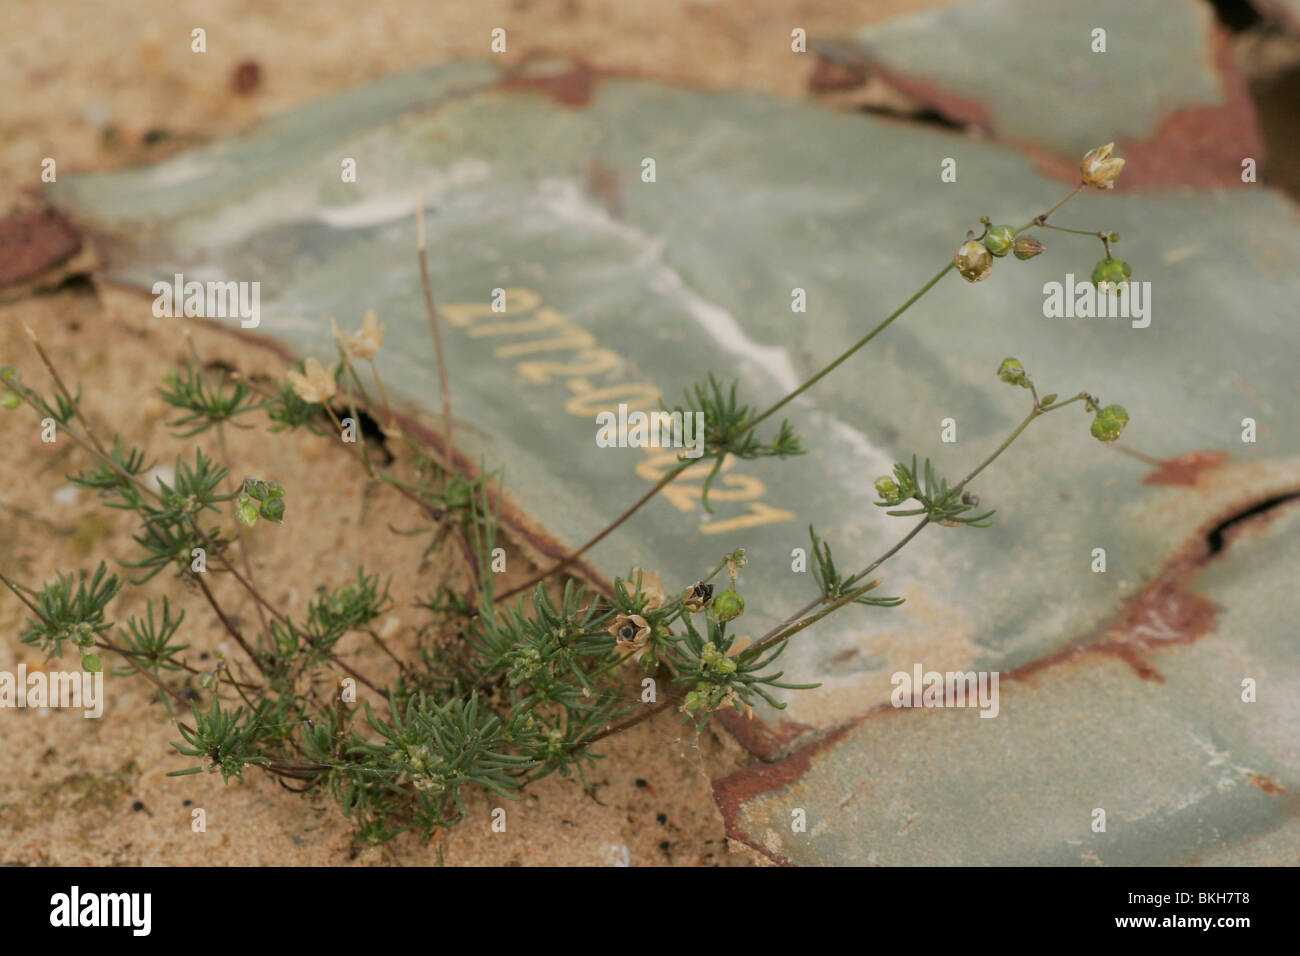 Heidespurrie groeit naast de restanten van een oude granaat, die op de zandverstuiving naar boven is gekomen; Morison's spurry next to a left-over of an old shell Stock Photo